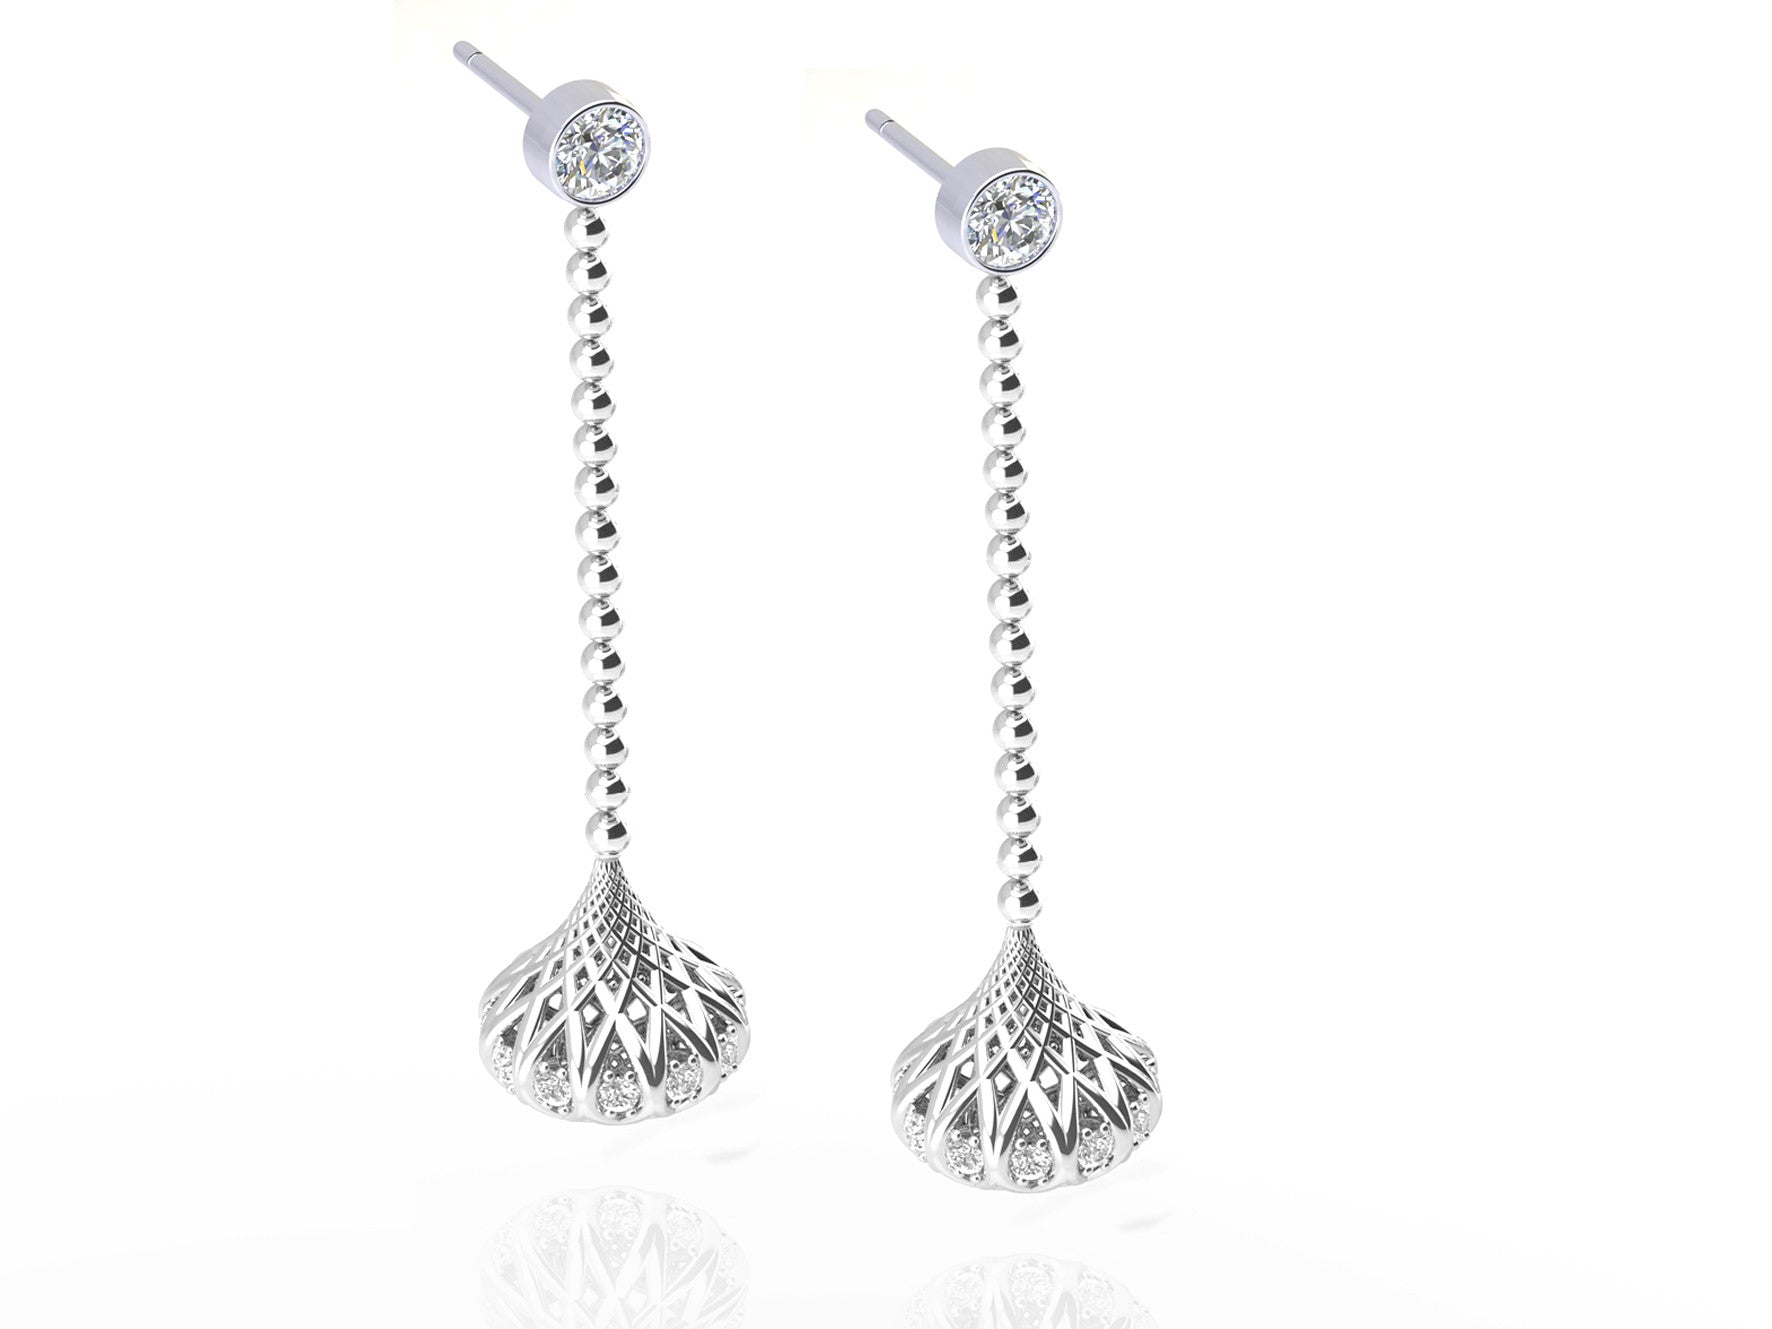 18ct White gold diamond earrings - ForeverJewels Design Studio 8